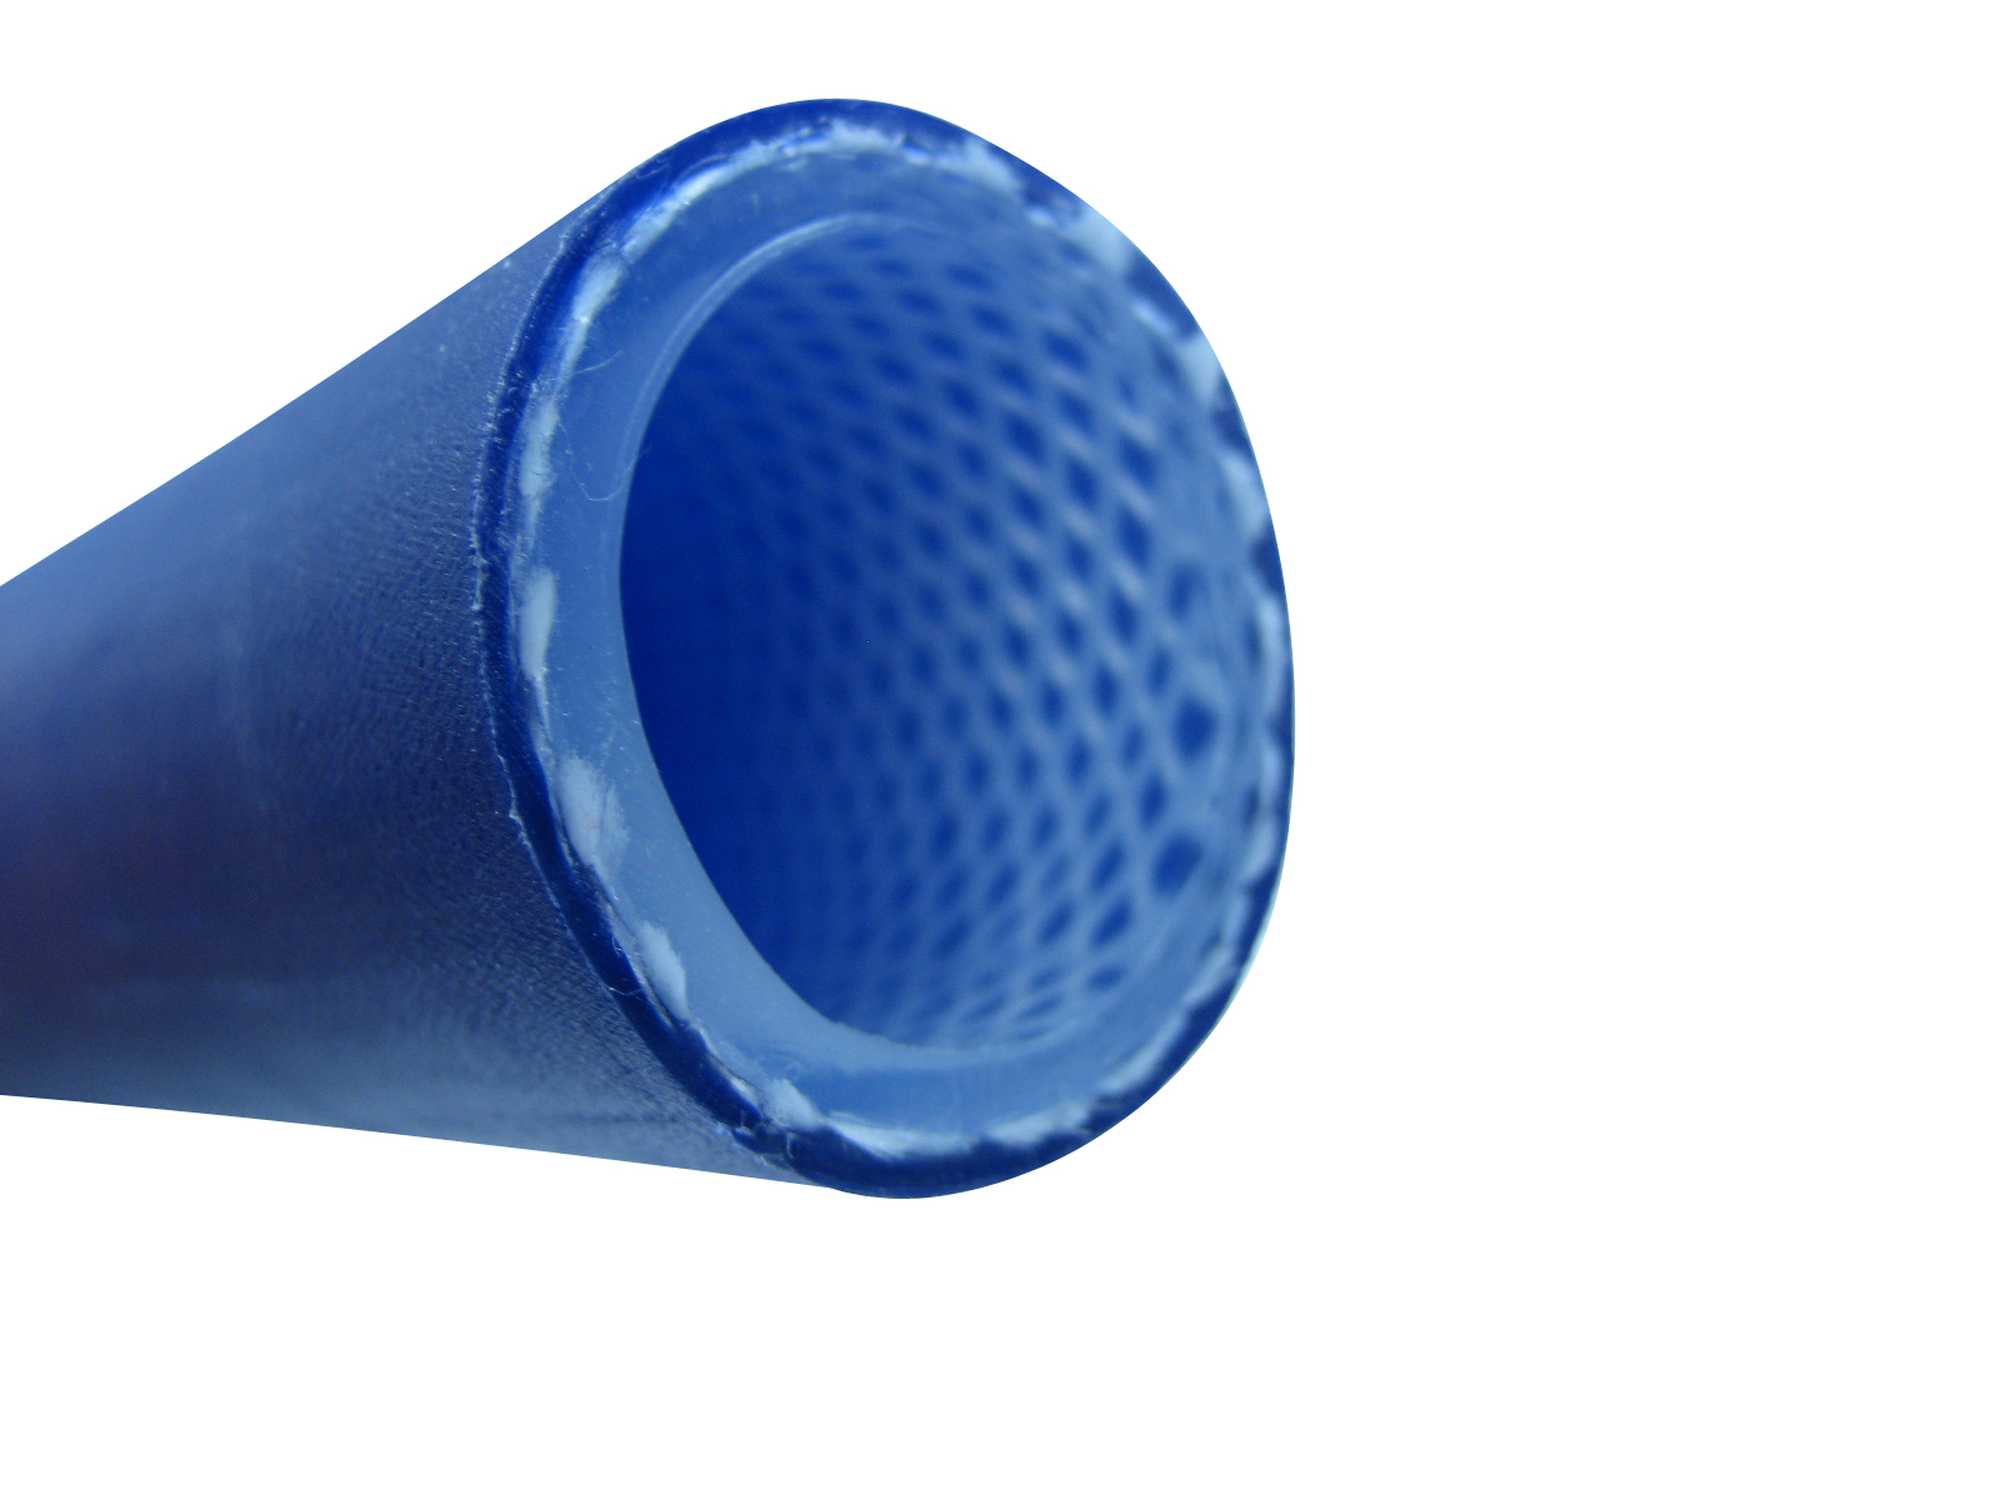 Hochflexibler Trinkwasserschlauch Profiline-Aqua Plus SOFT nach KTW-A, W270, auf 50m-Rolle in 13mm (1/2"), 19mm (3/4"), 25mm (1")